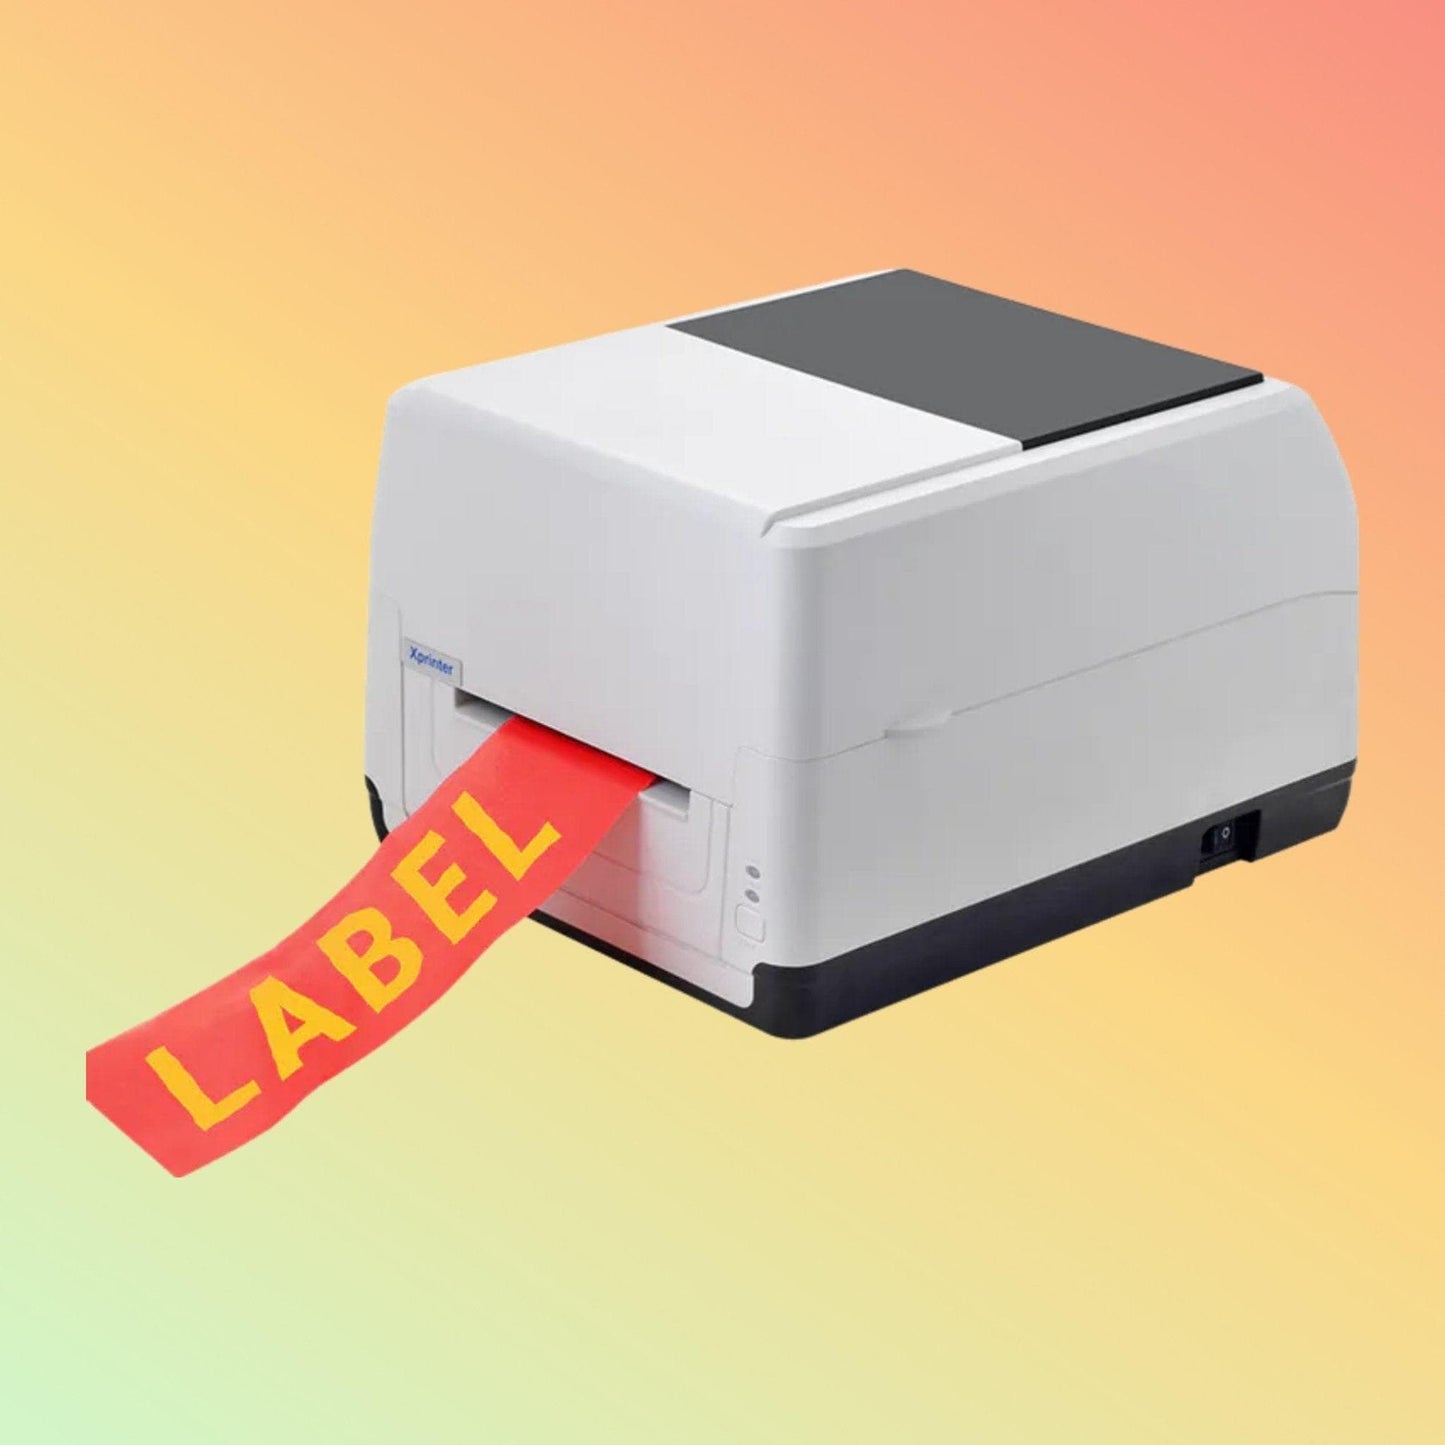 Label Printer - Xprinter XP-T451B - Neotech